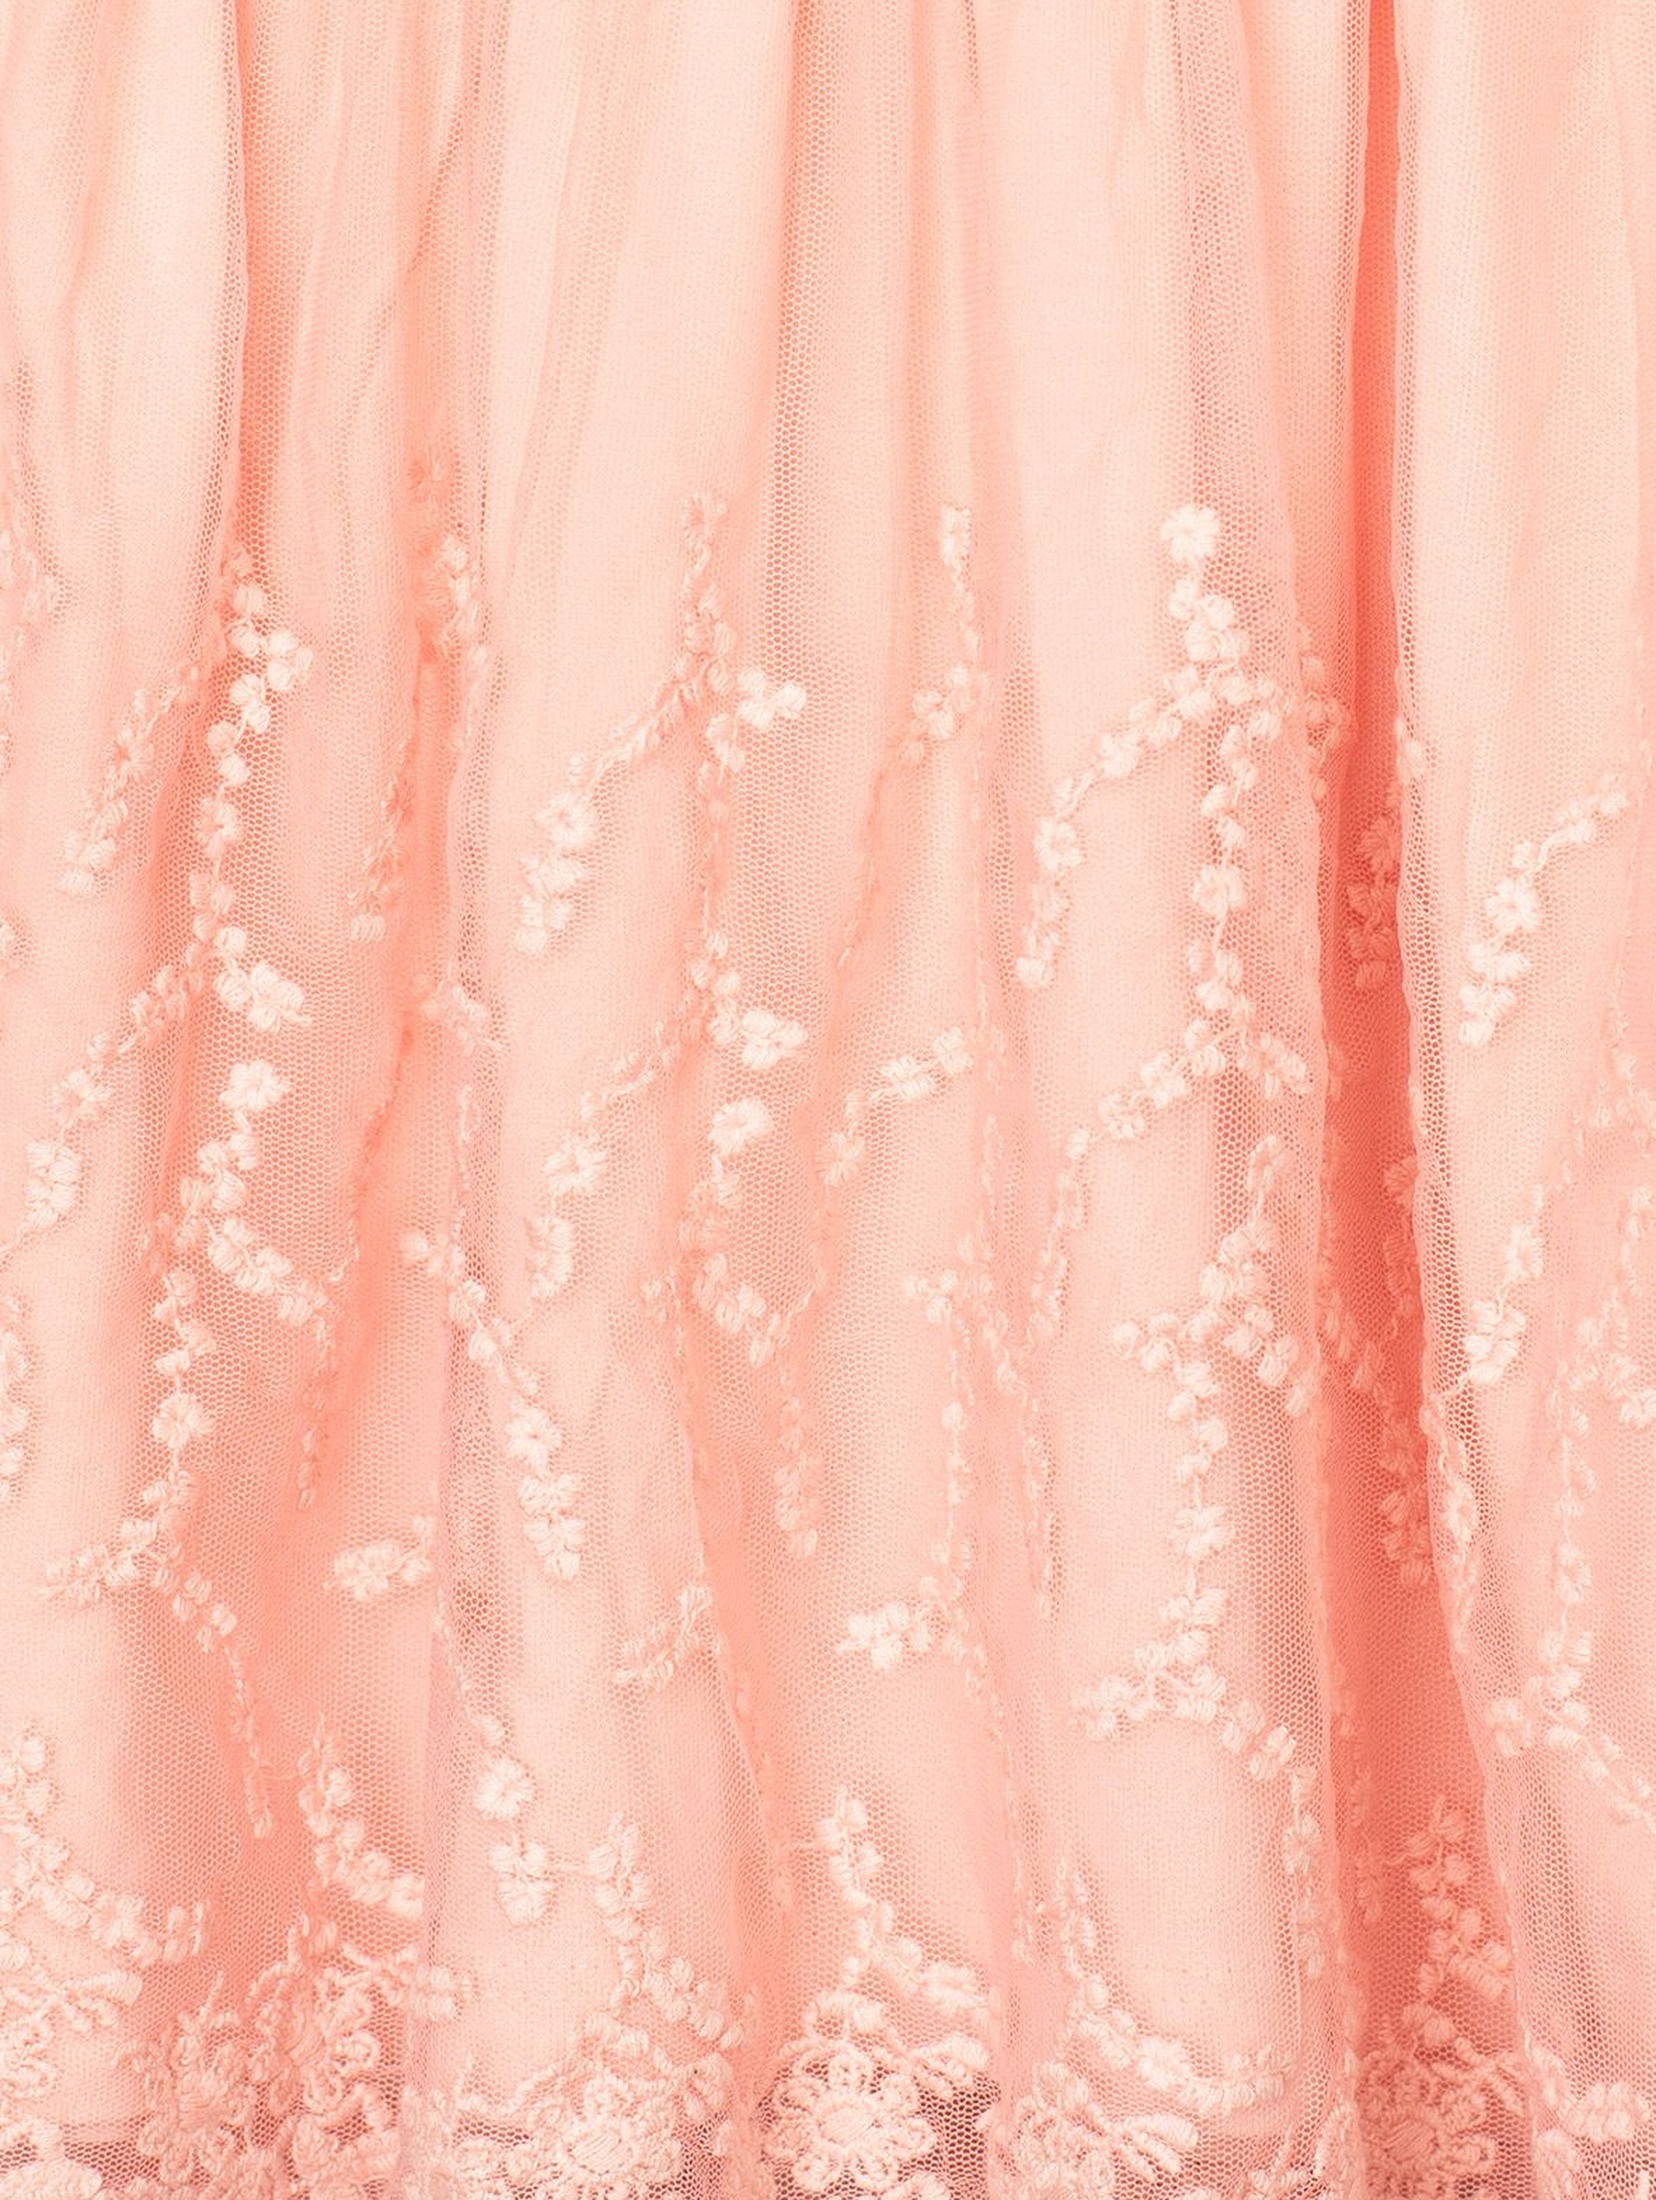 Elegancka sukienka dla niemowlaka - różowa z koronką